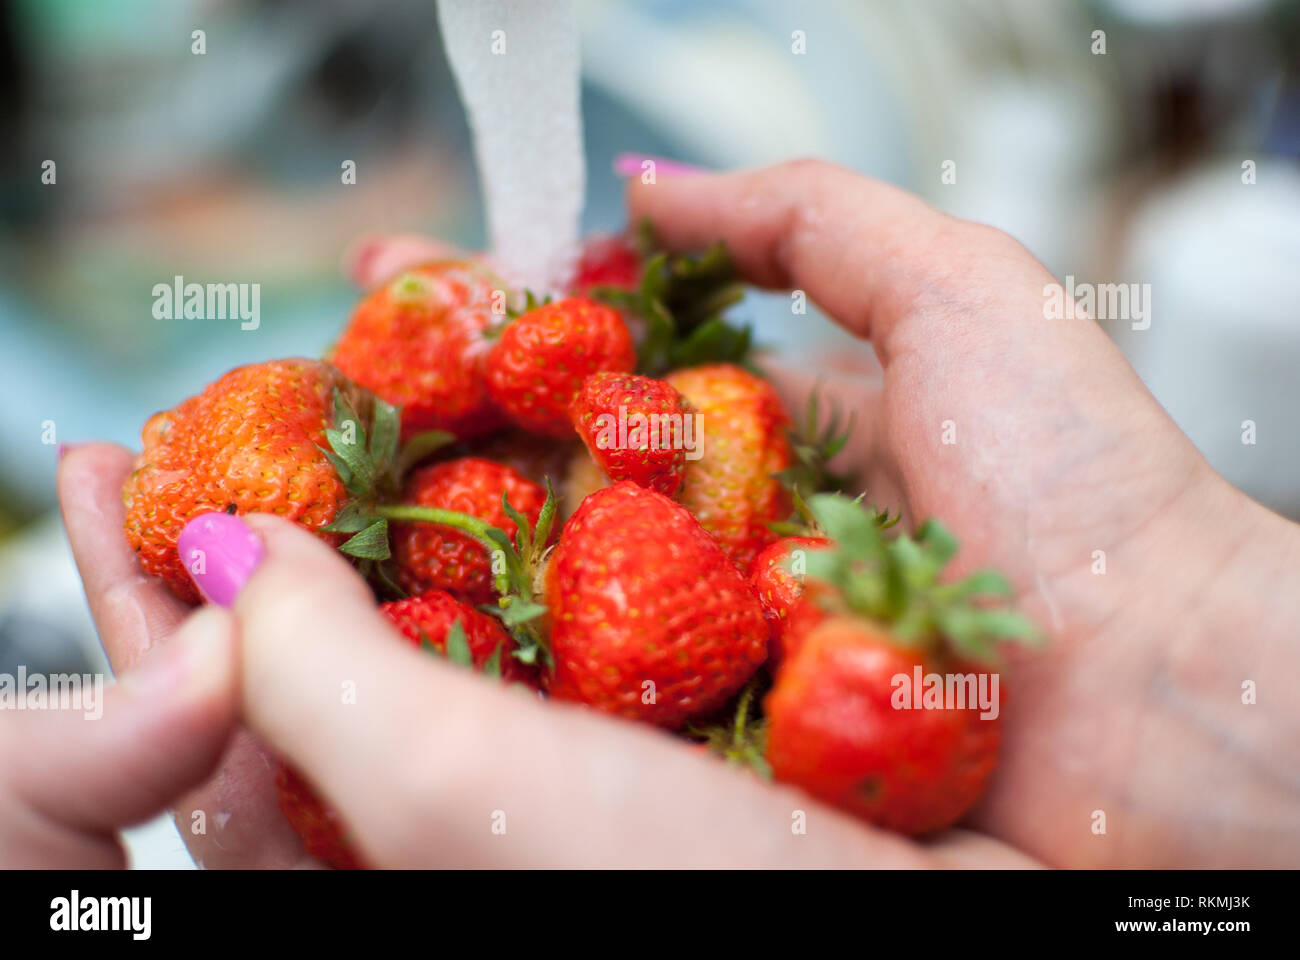 women's hands hold fresh ripe strawberries Stock Photo